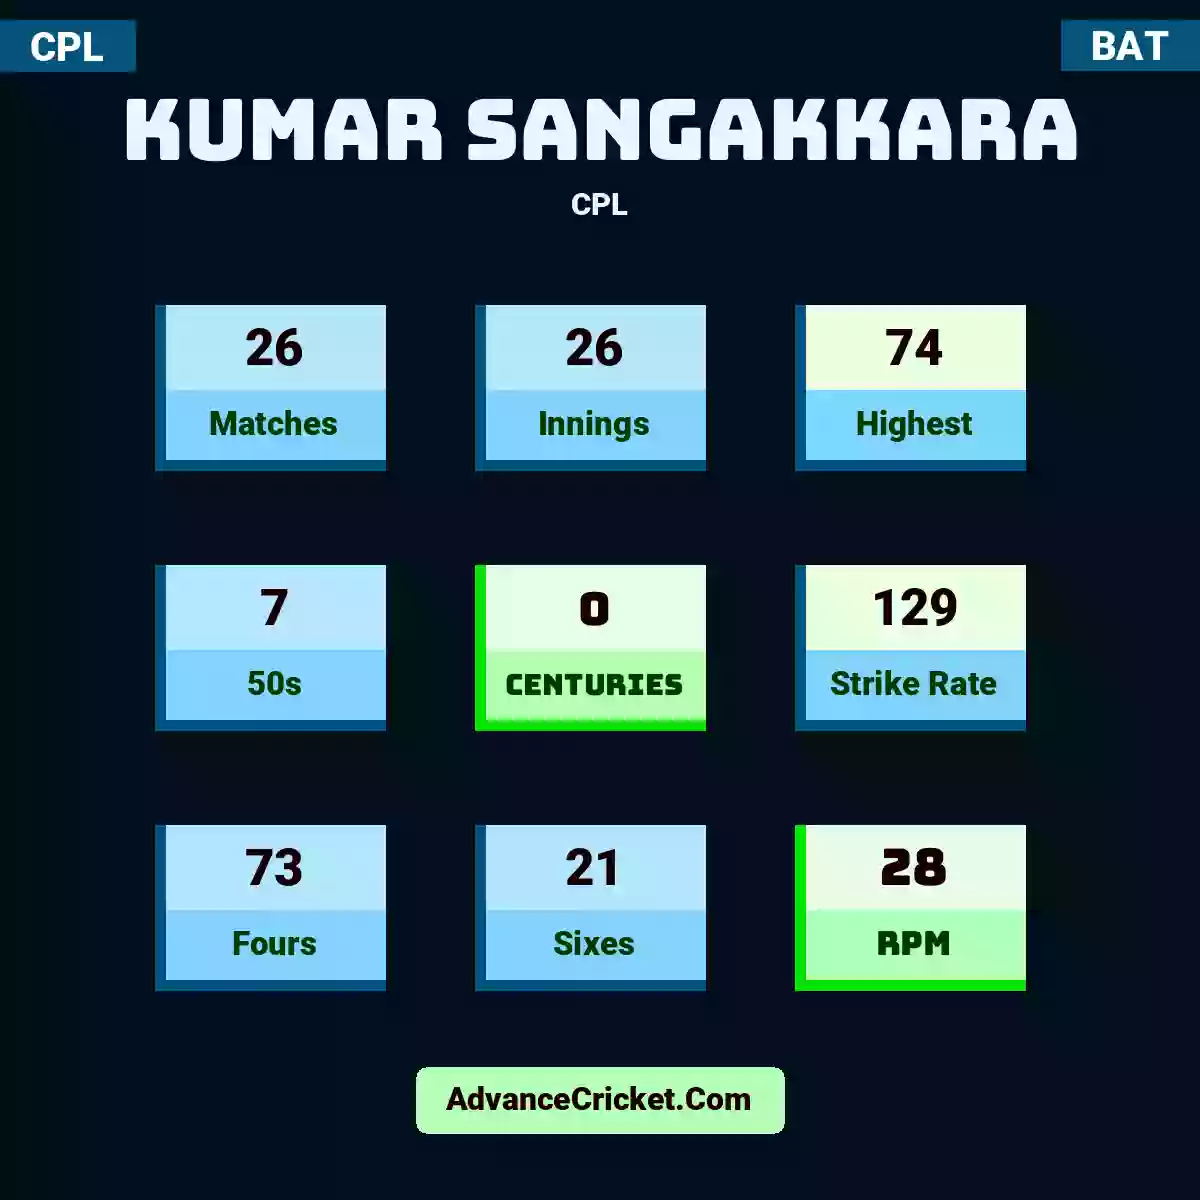 Kumar Sangakkara CPL , Kumar Sangakkara played 26 matches, scored 74 runs as highest, 7 half-centuries, and 0 centuries, with a strike rate of 129. K.Sangakkara hit 73 fours and 21 sixes, with an RPM of 28.